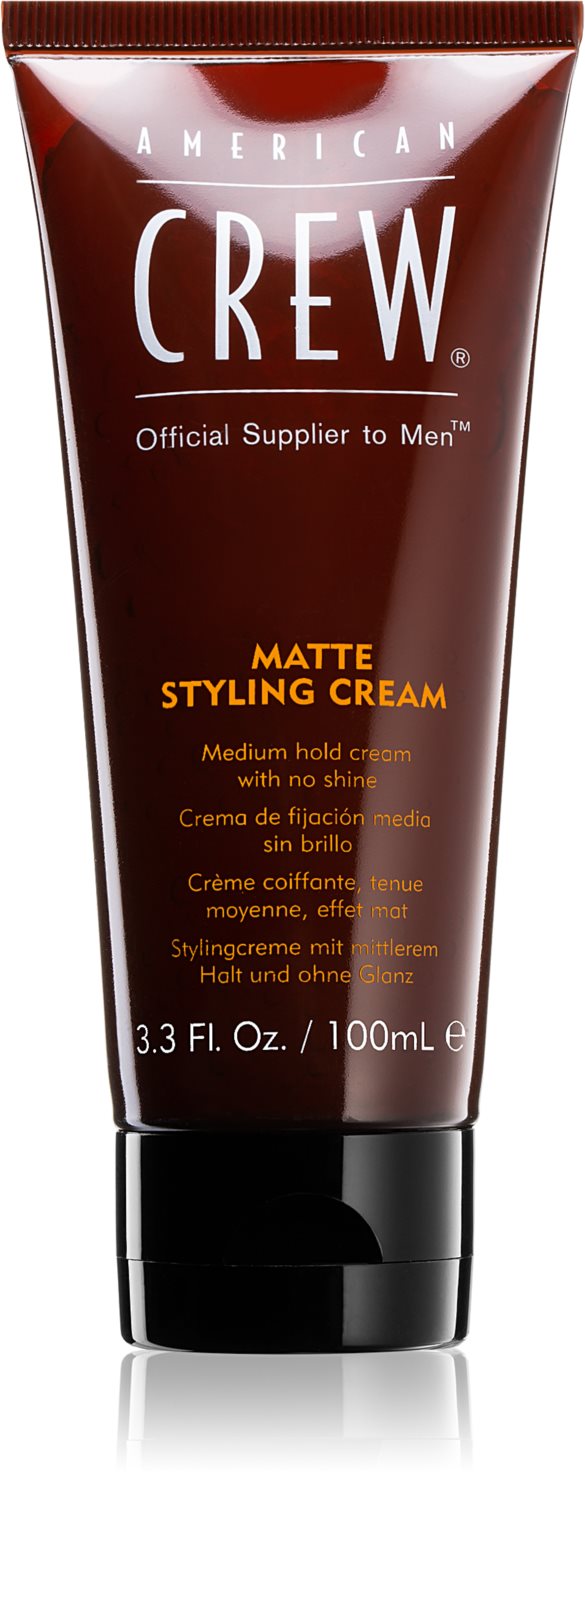 American Crew Styling Matte Styling Cream - středně tužící gel s matným vzhledem, 100 ml